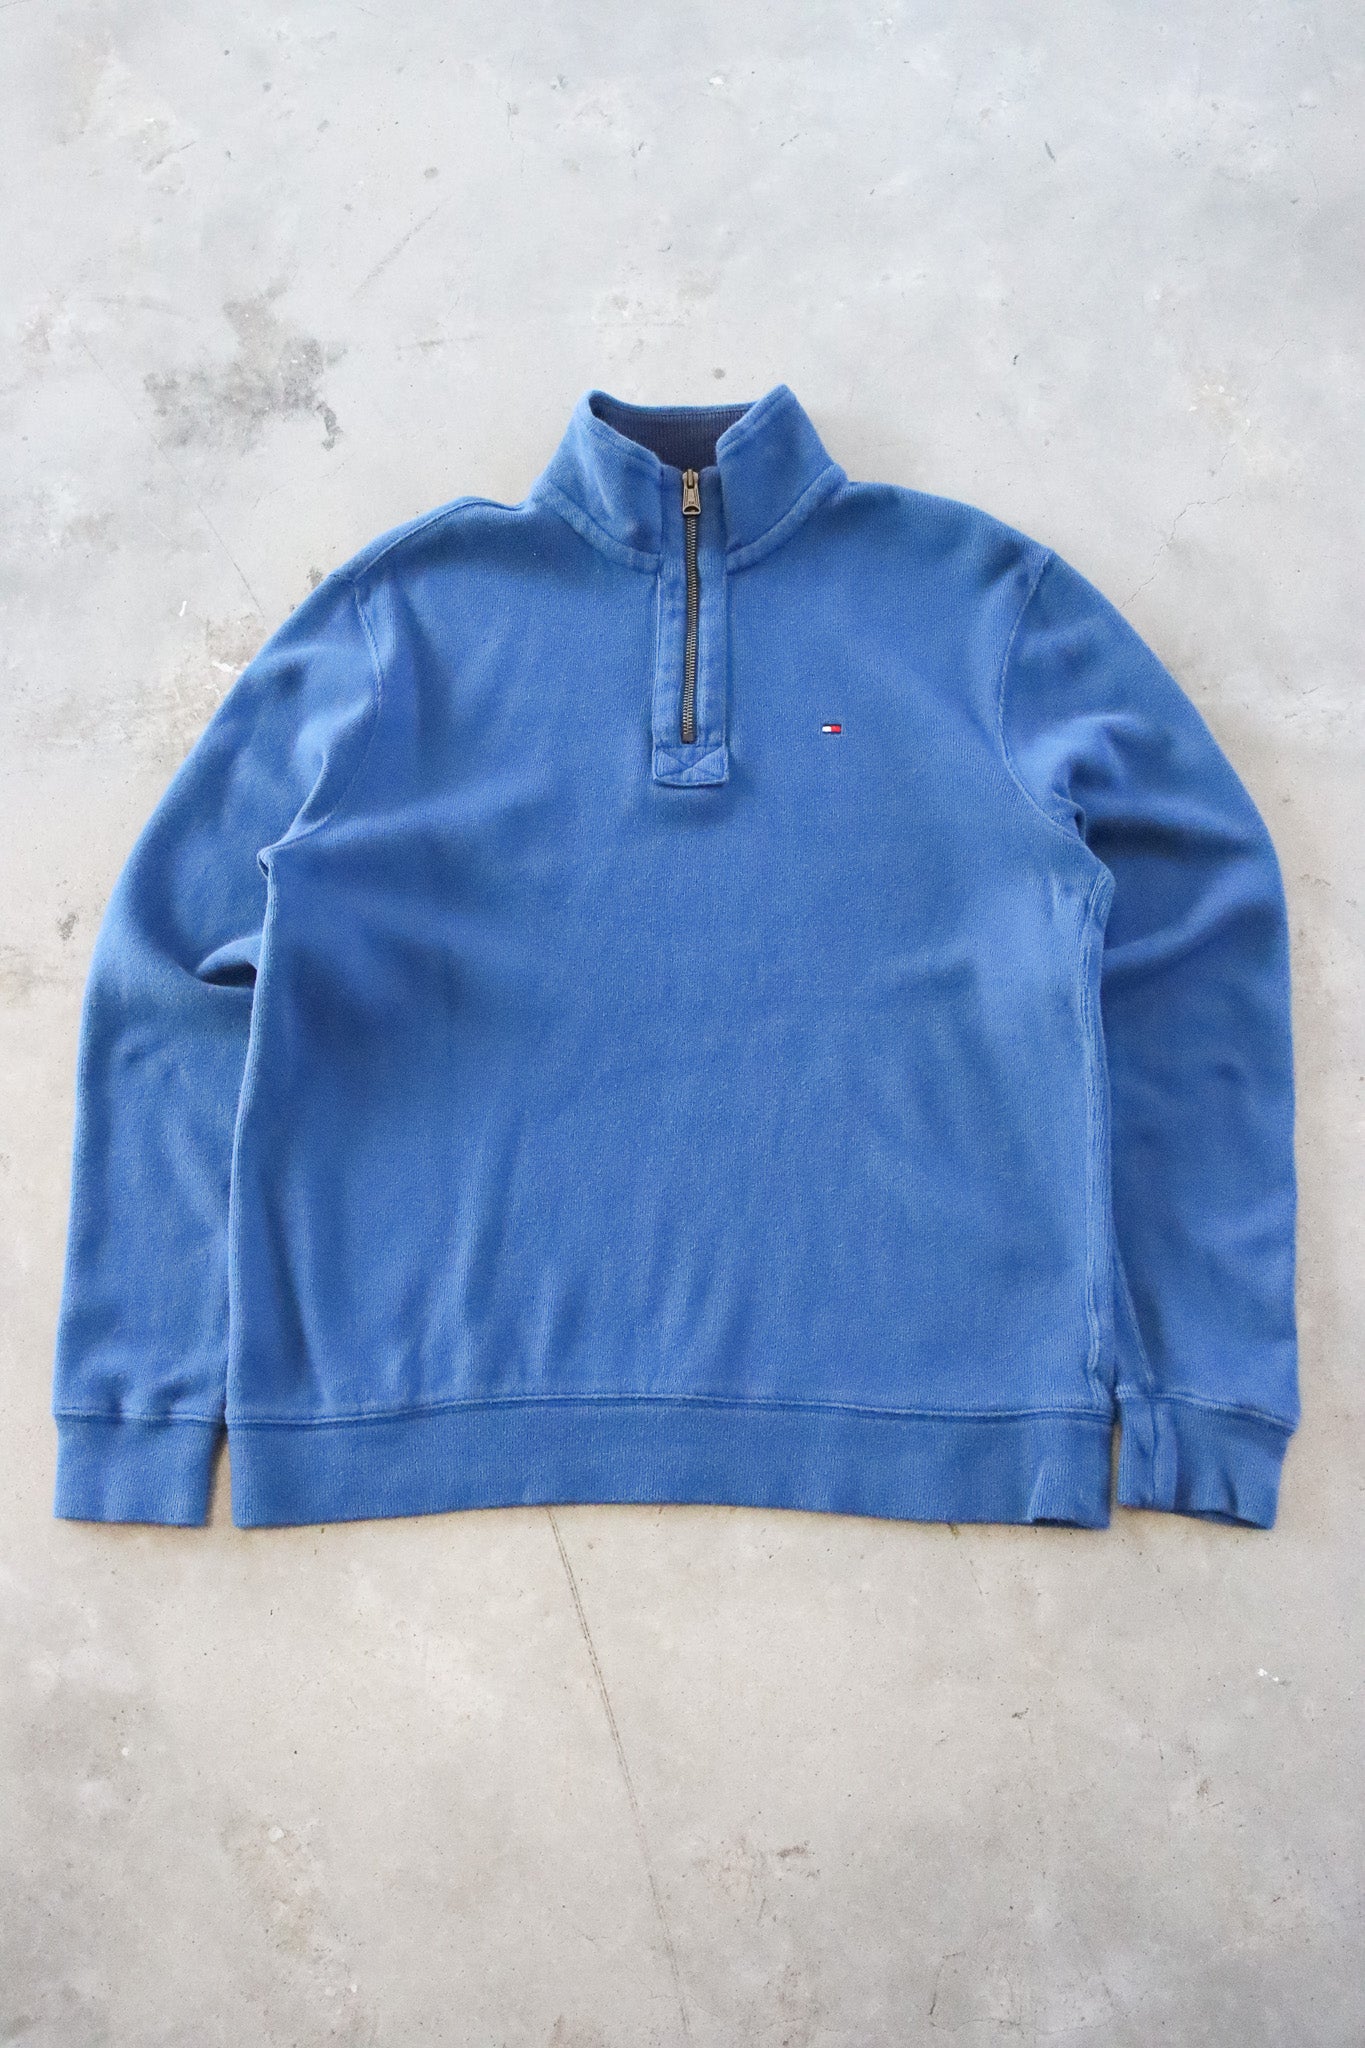 Vintage Tommy Hilfiger 1/4 Zip Sweater Medium